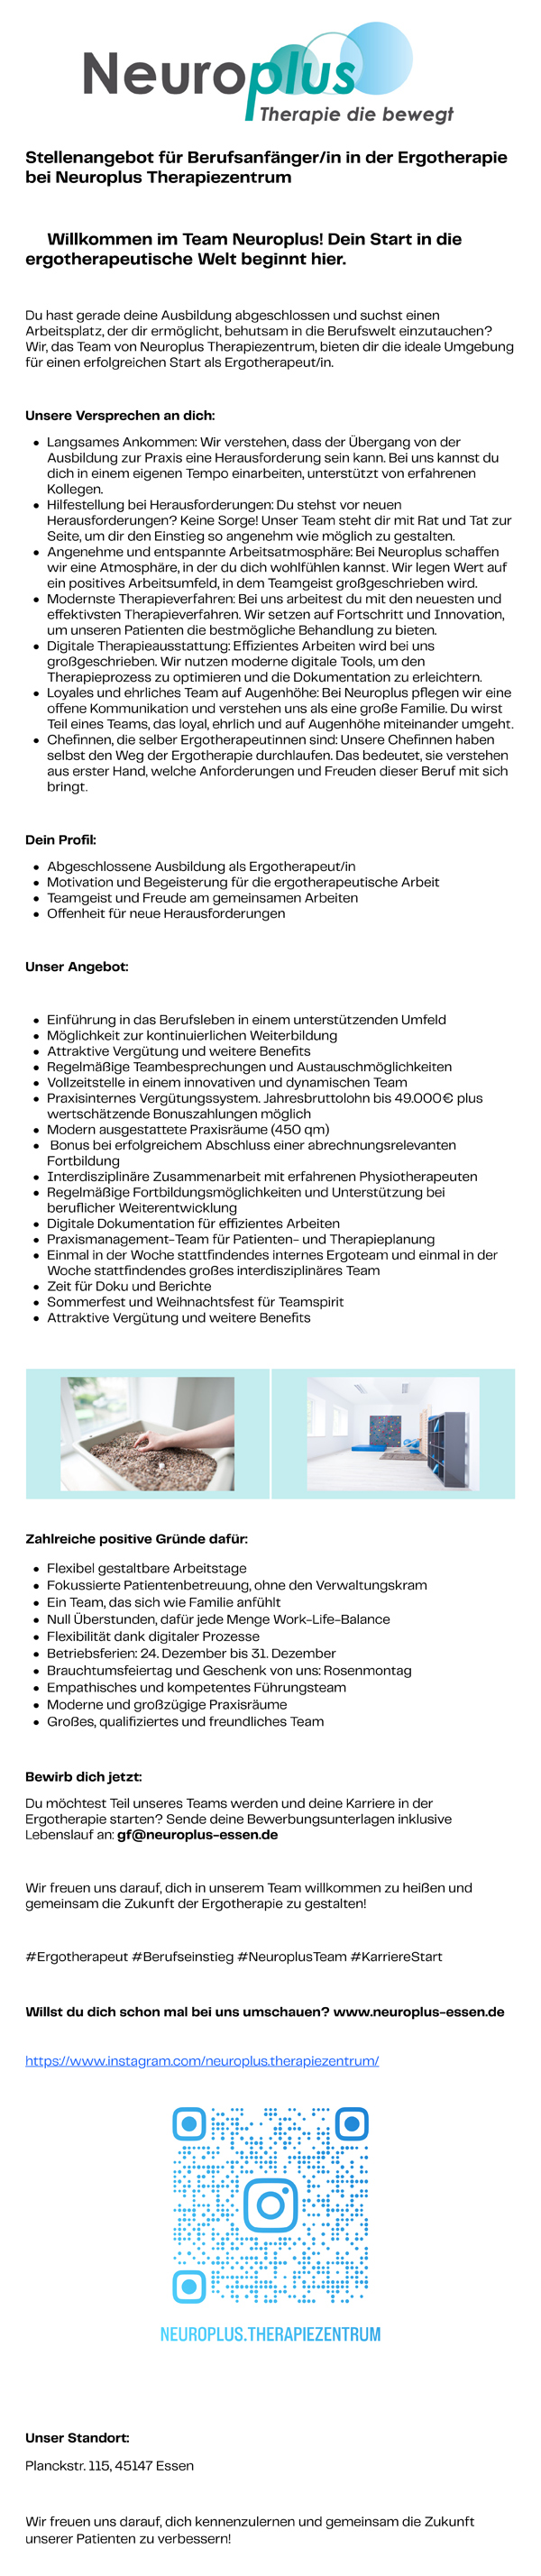 Stellenangebot für Berufsanfänger/in in der Ergotherapie bei Neuroplus Therapiezentrum in Essen